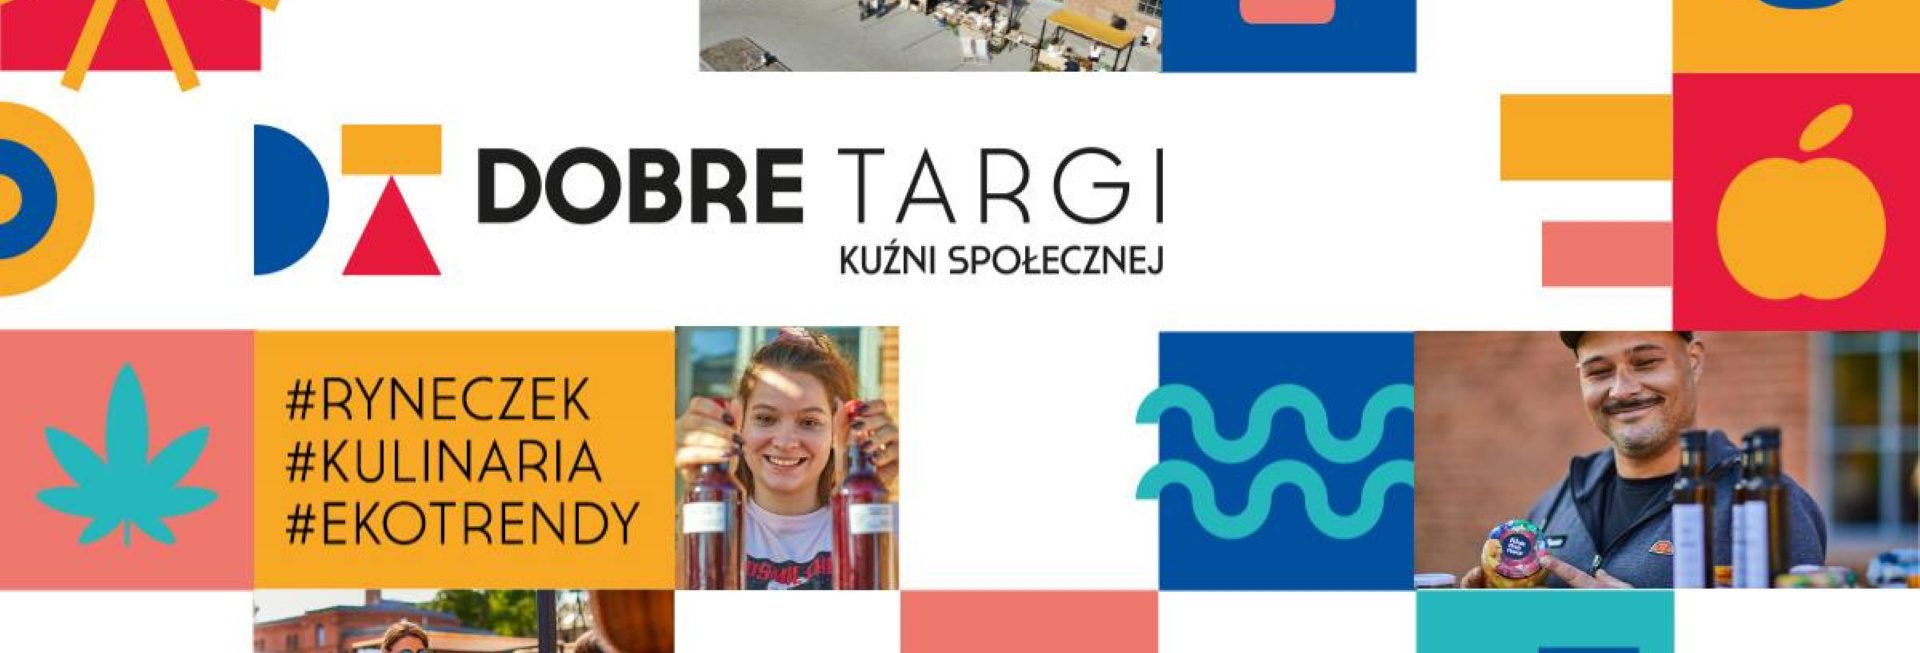 Plakat graficzny zapraszający do Olsztyna na Dobre Targi przy Kuźni Społecznej. Dobre Targi - Ryneczek, Kulinaria, Ecotrendy - Olsztyn 2021. Na plakacie zdjęcia stoisk z Targów przeplatane kolorową grafiką.  